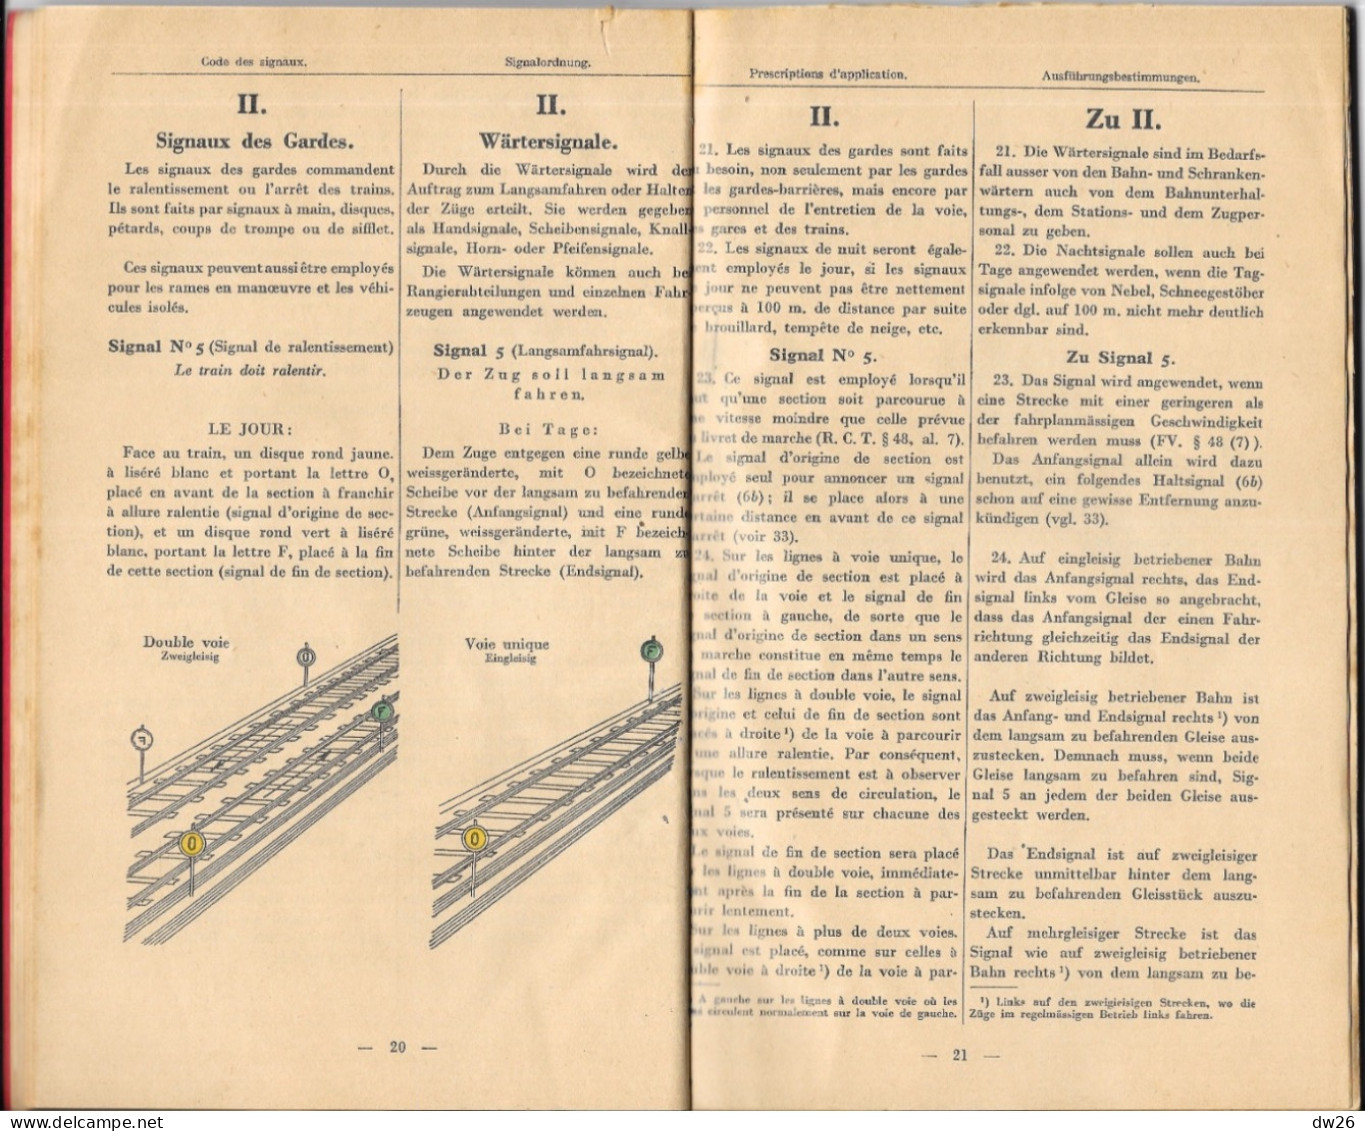 Chemins De Fer D'Alsace Et De Lorraine Et Du Luxembourg - Livret: Règlements Pour Les Signaux 1933 - Railway